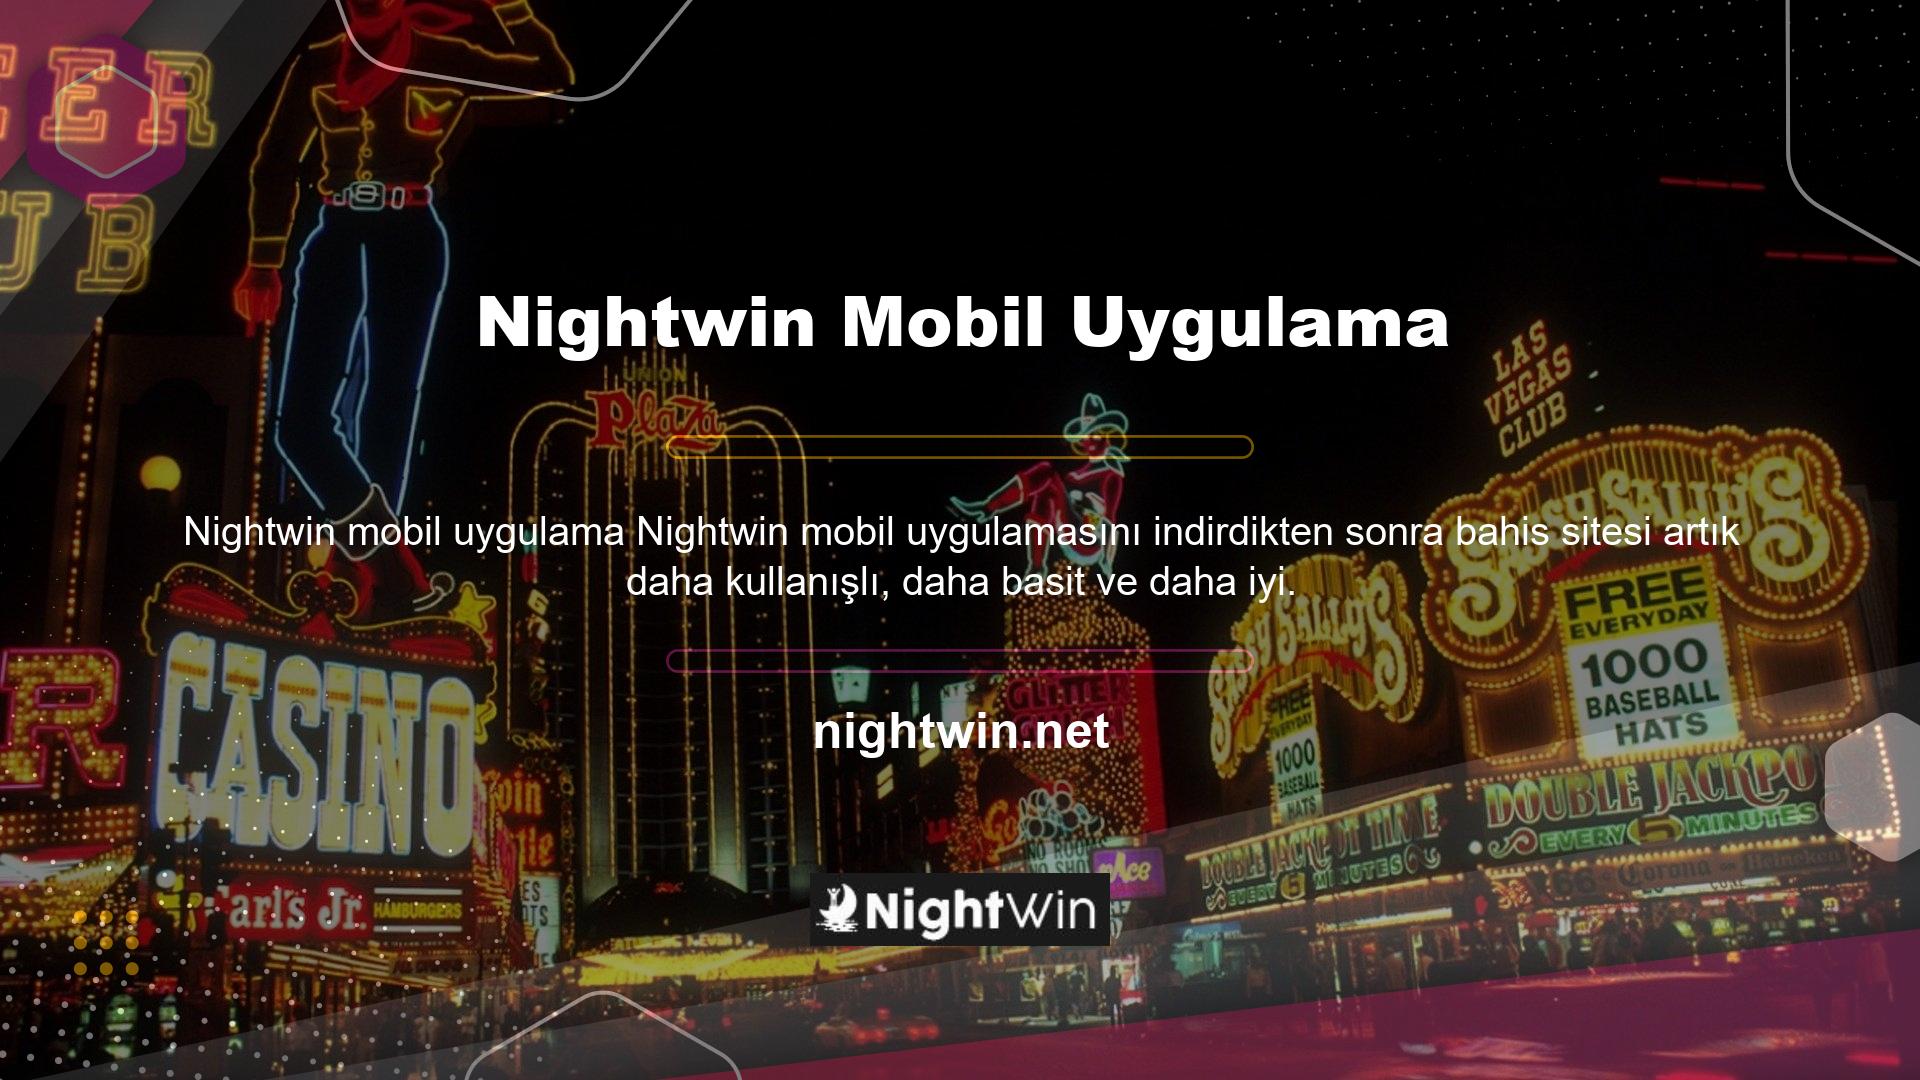 Nightwin mobil uygulama hizmetleri Android ve IOS cihazlar için mevcuttur